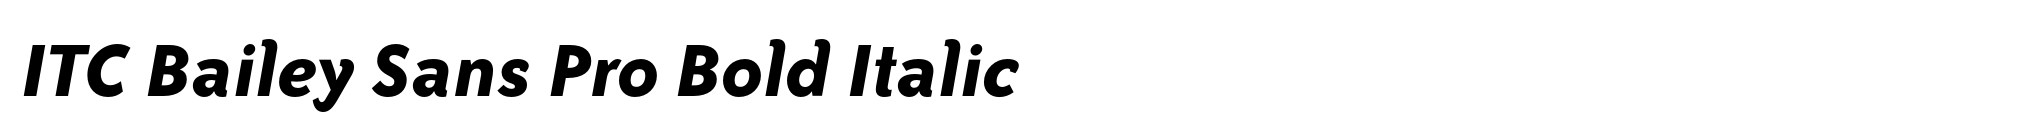 ITC Bailey Sans Pro Bold Italic image